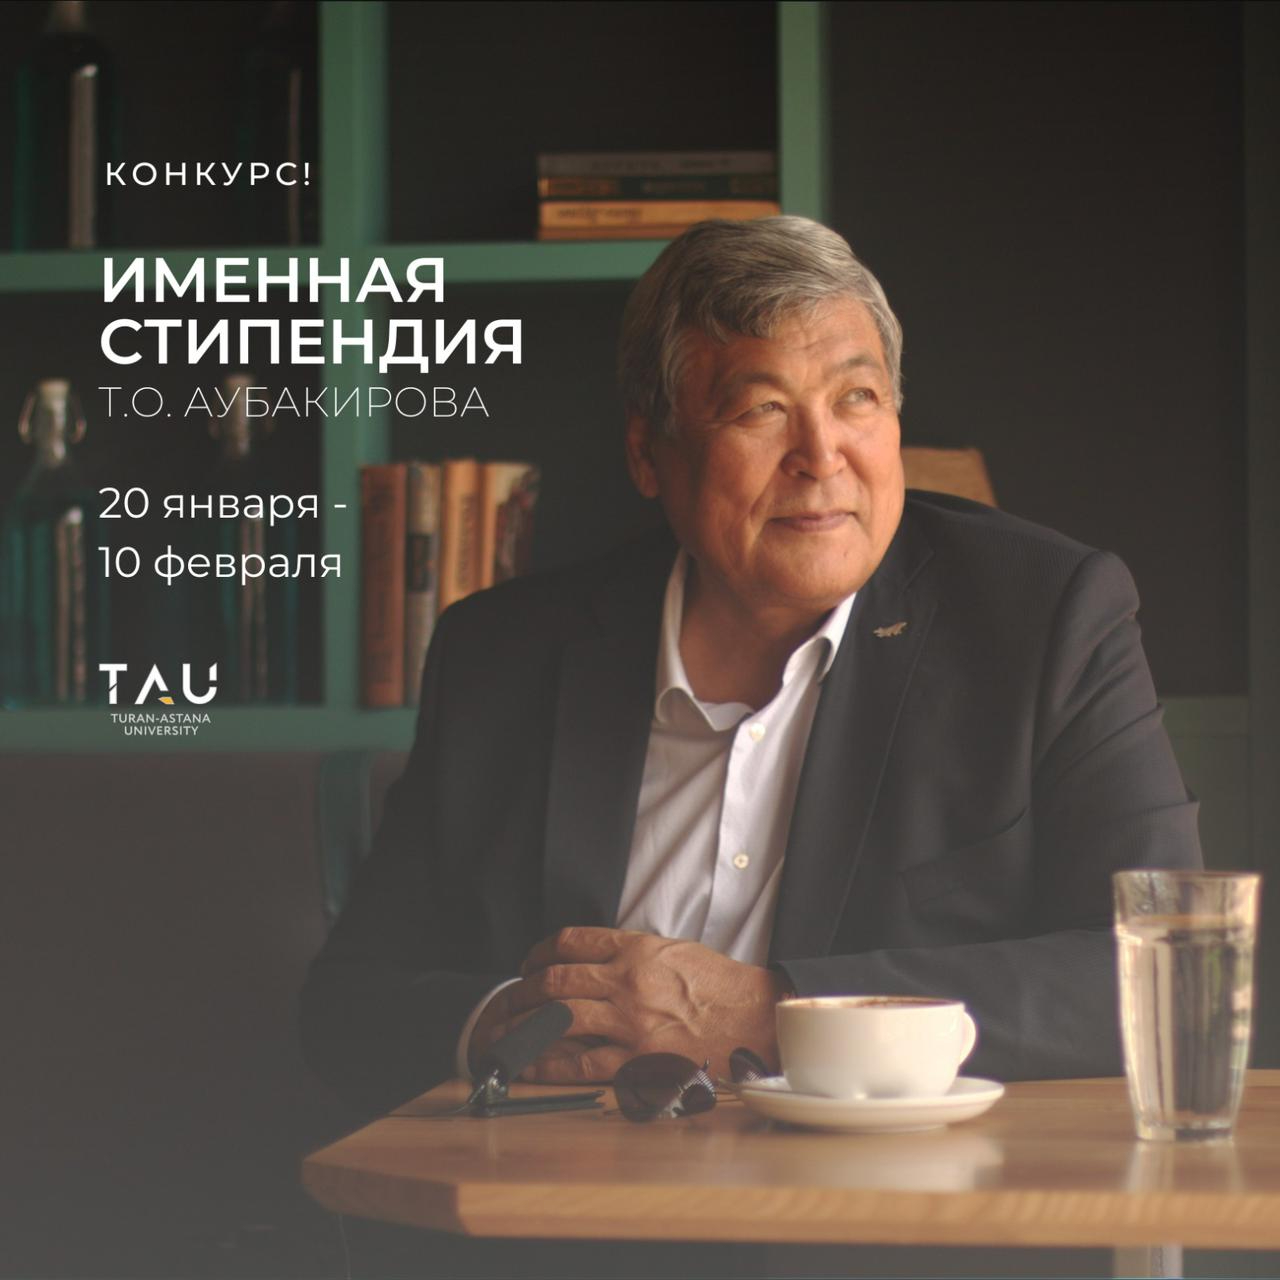 PERSONAL SCHOLARSHIP OF T.O. AUBAKIROV